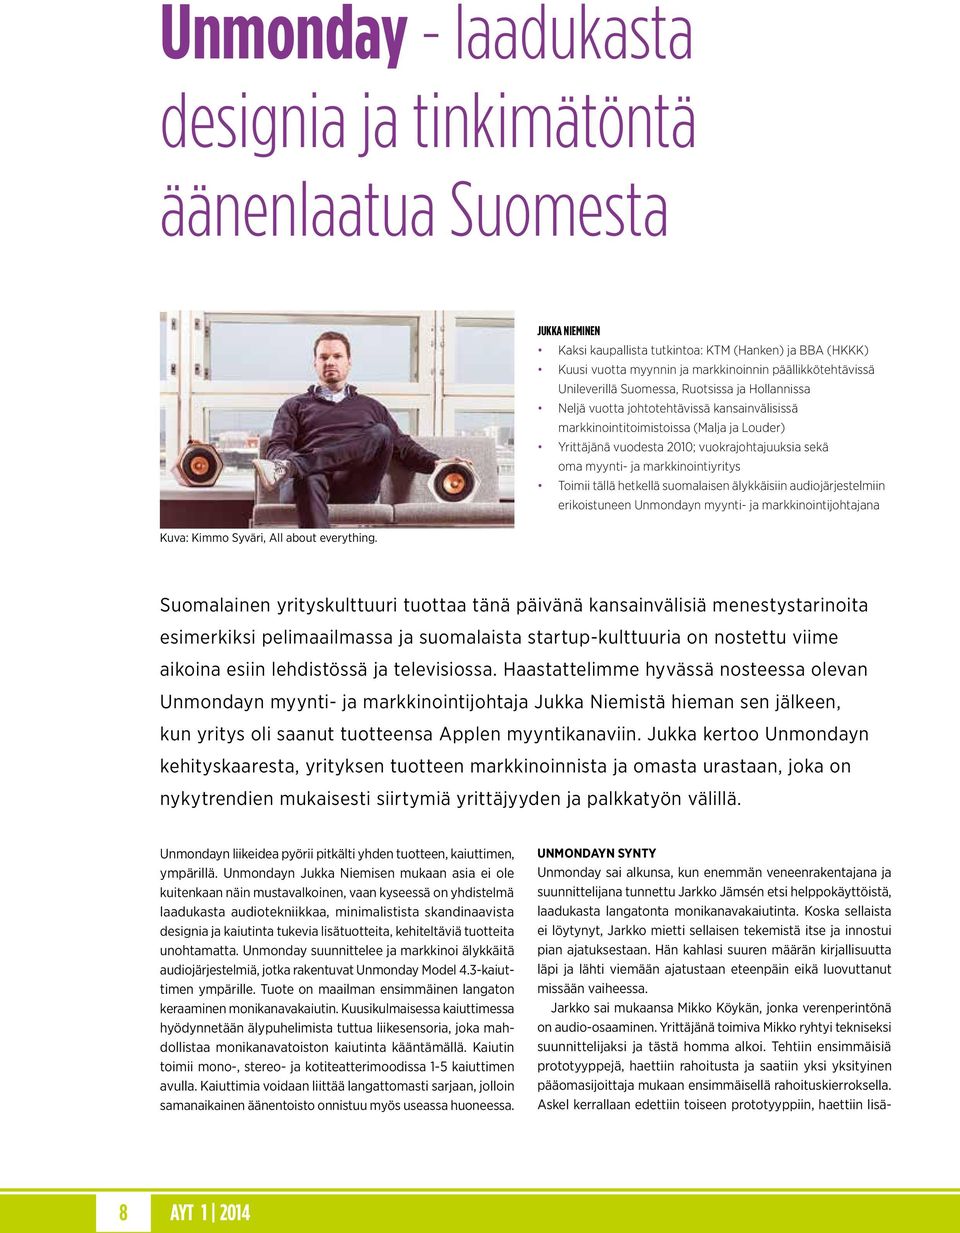 ja markkinointiyritys Toimii tällä hetkellä suomalaisen älykkäisiin audiojärjestelmiin erikoistuneen Unmondayn myynti- ja markkinointijohtajana Kuva: Kimmo Syväri, All about everything.